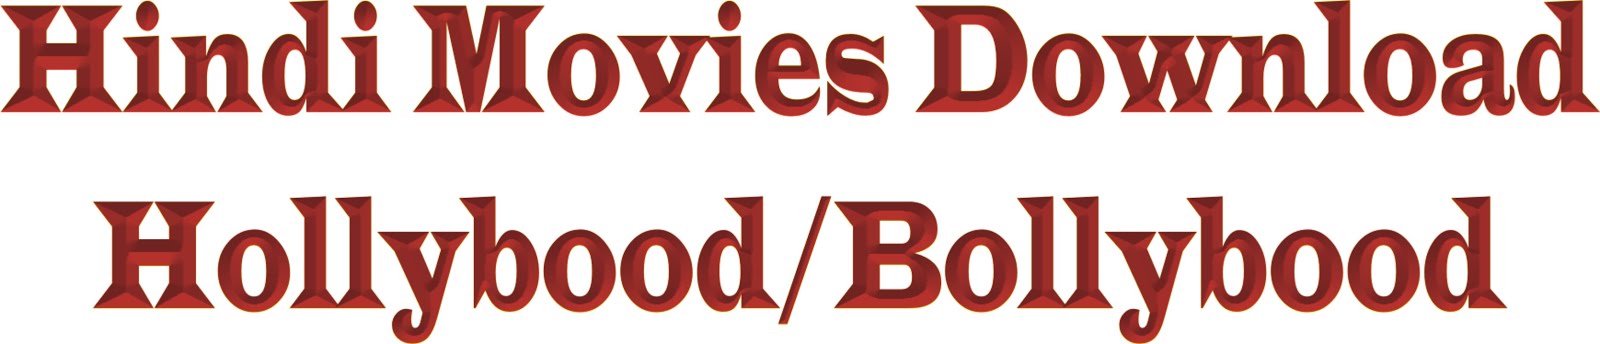 Hindi Movies Download-Hollybood/Bollybood